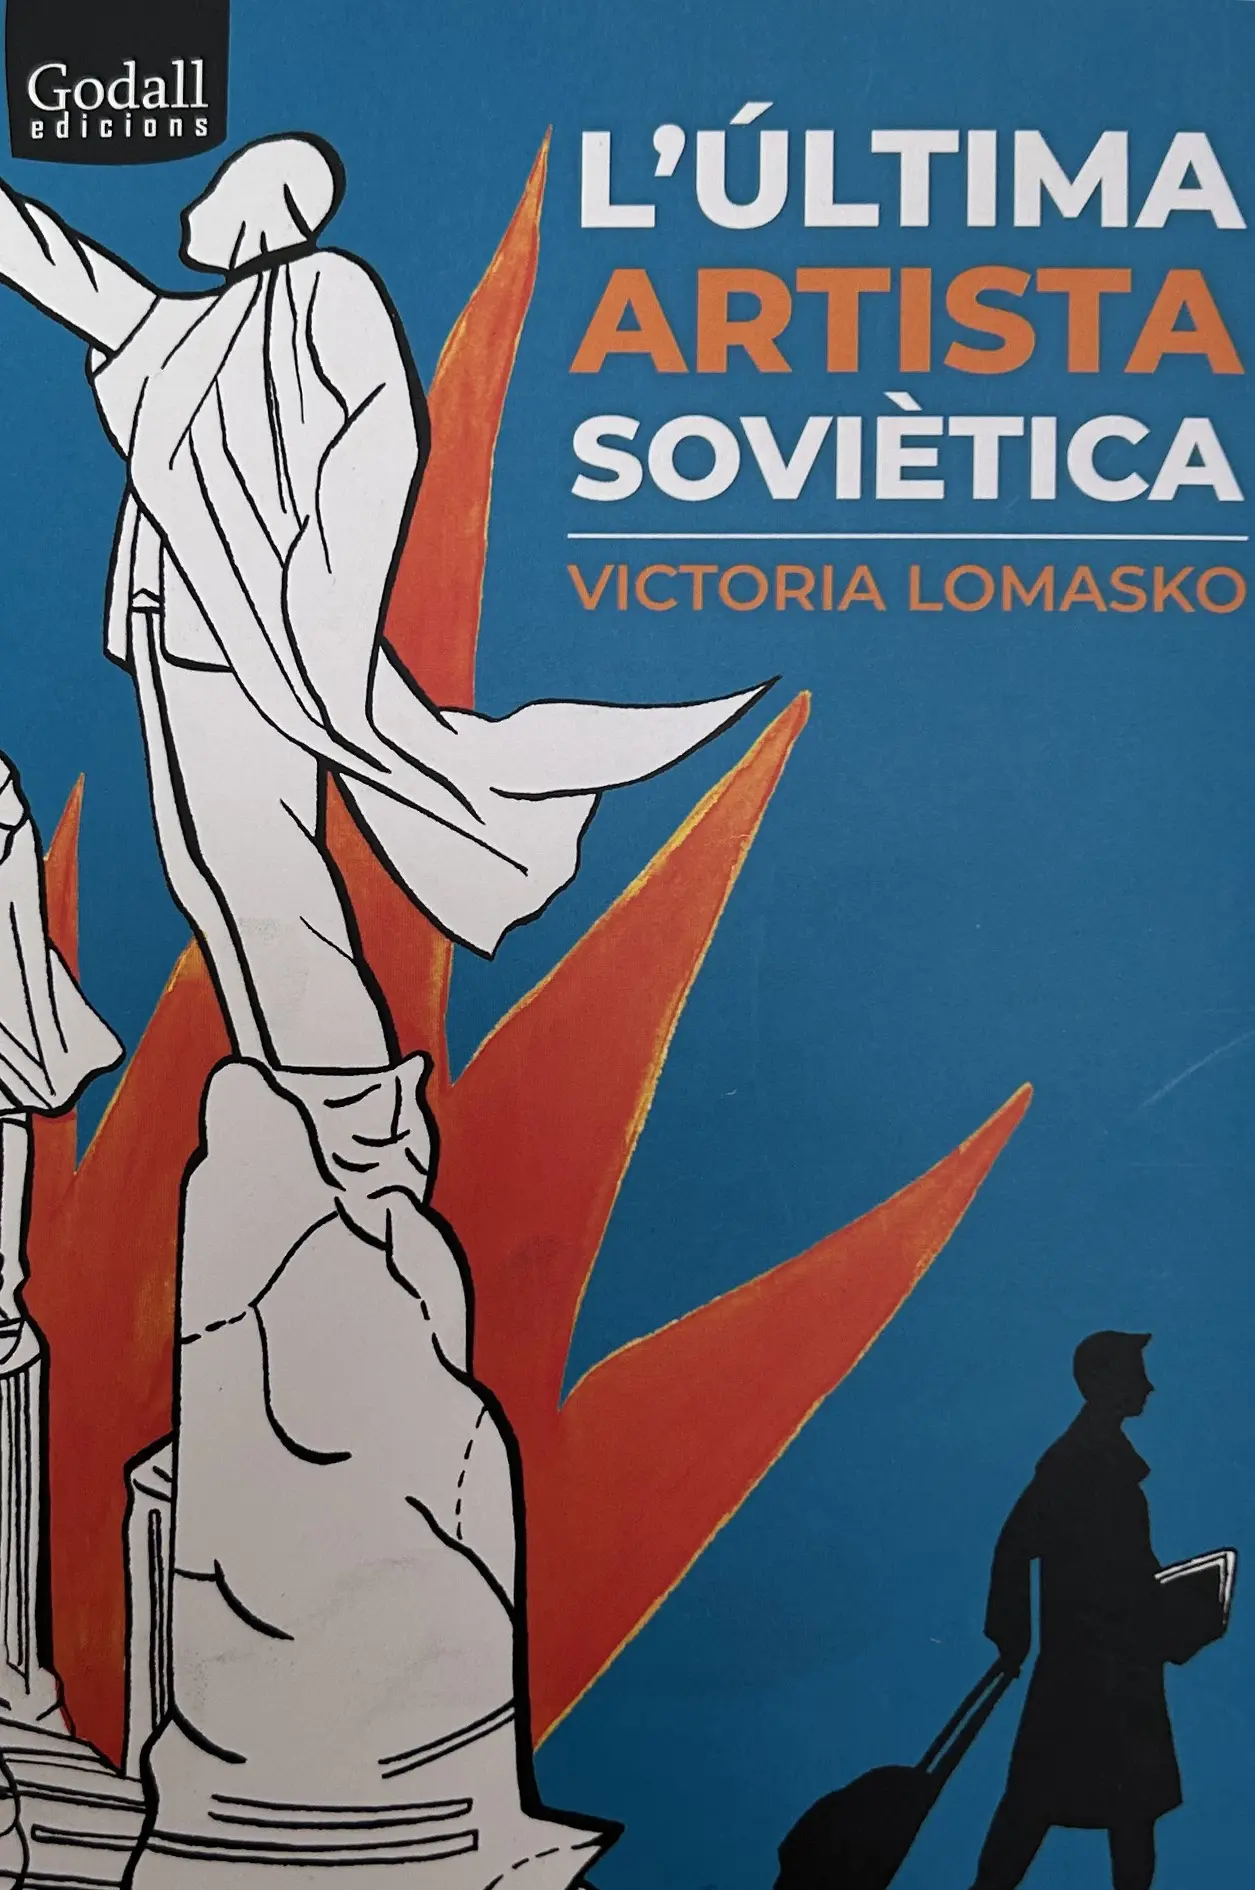 L'última artista soviètica flic festival